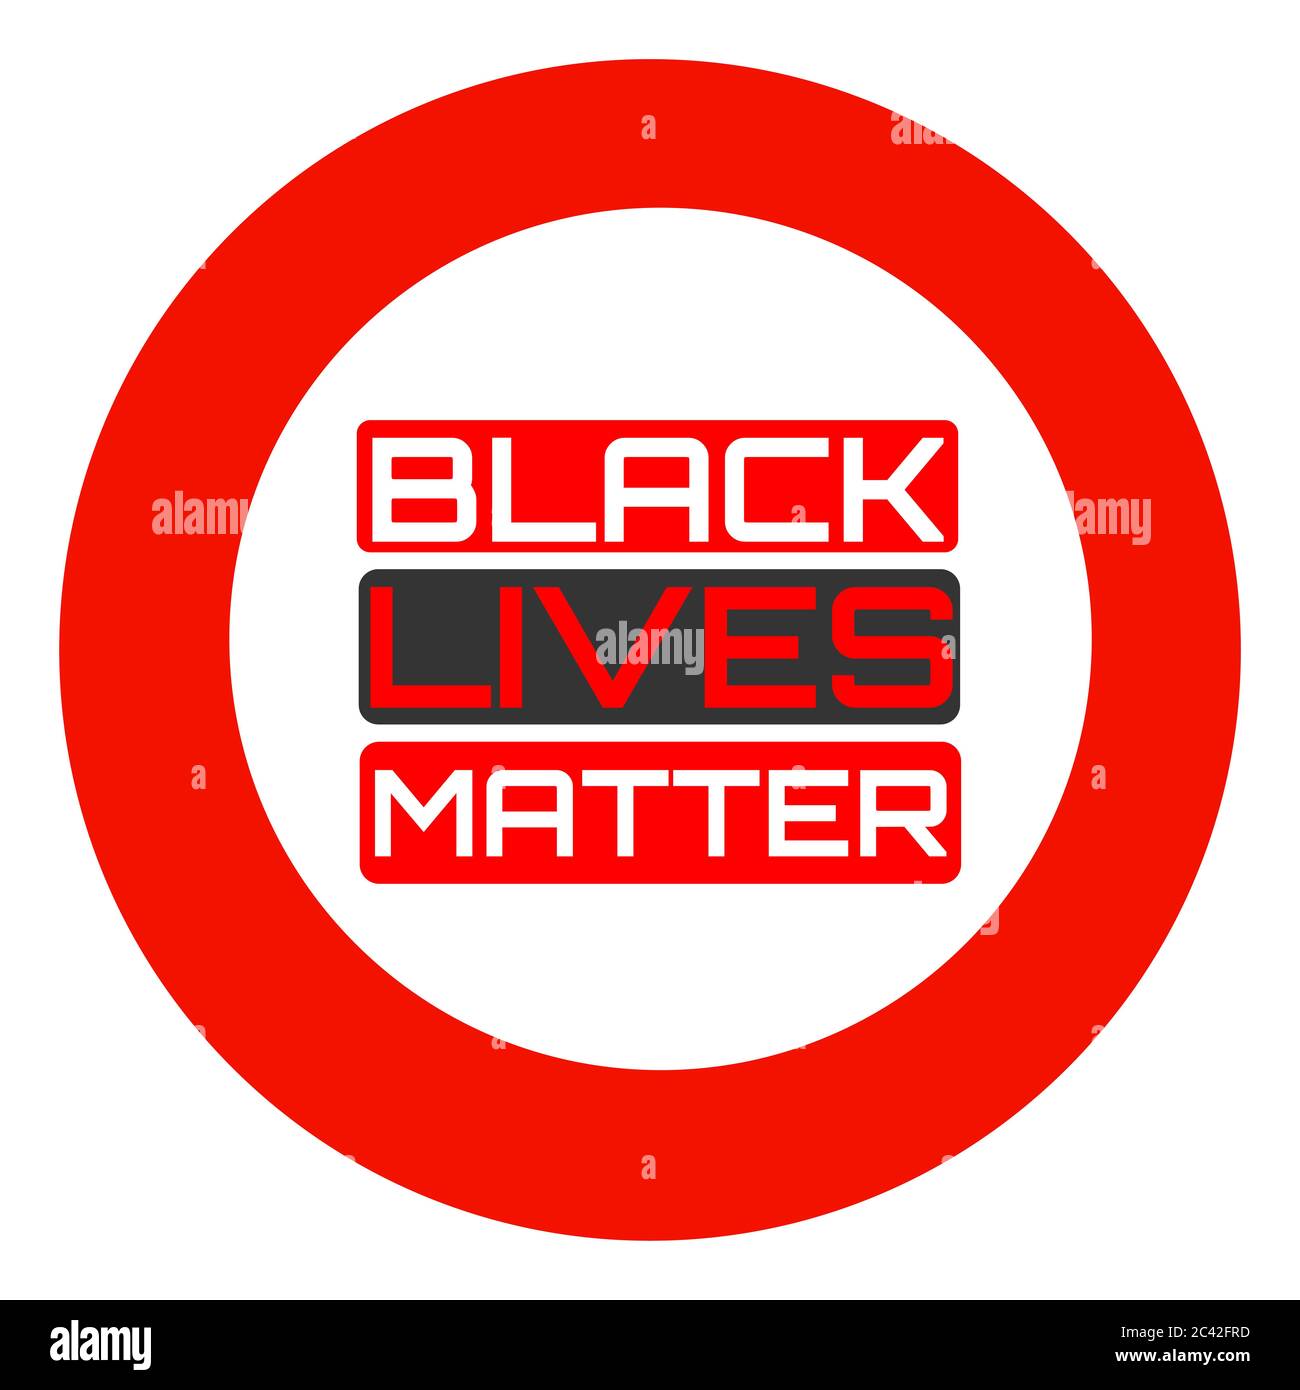 Schwarze Leben sind wichtig, ich kann nicht atmen. Protestbanner über das Menschenrecht schwarzer Menschen in den USA. Schwarze Leben Sind Wichtig. Amerika. Stockfoto